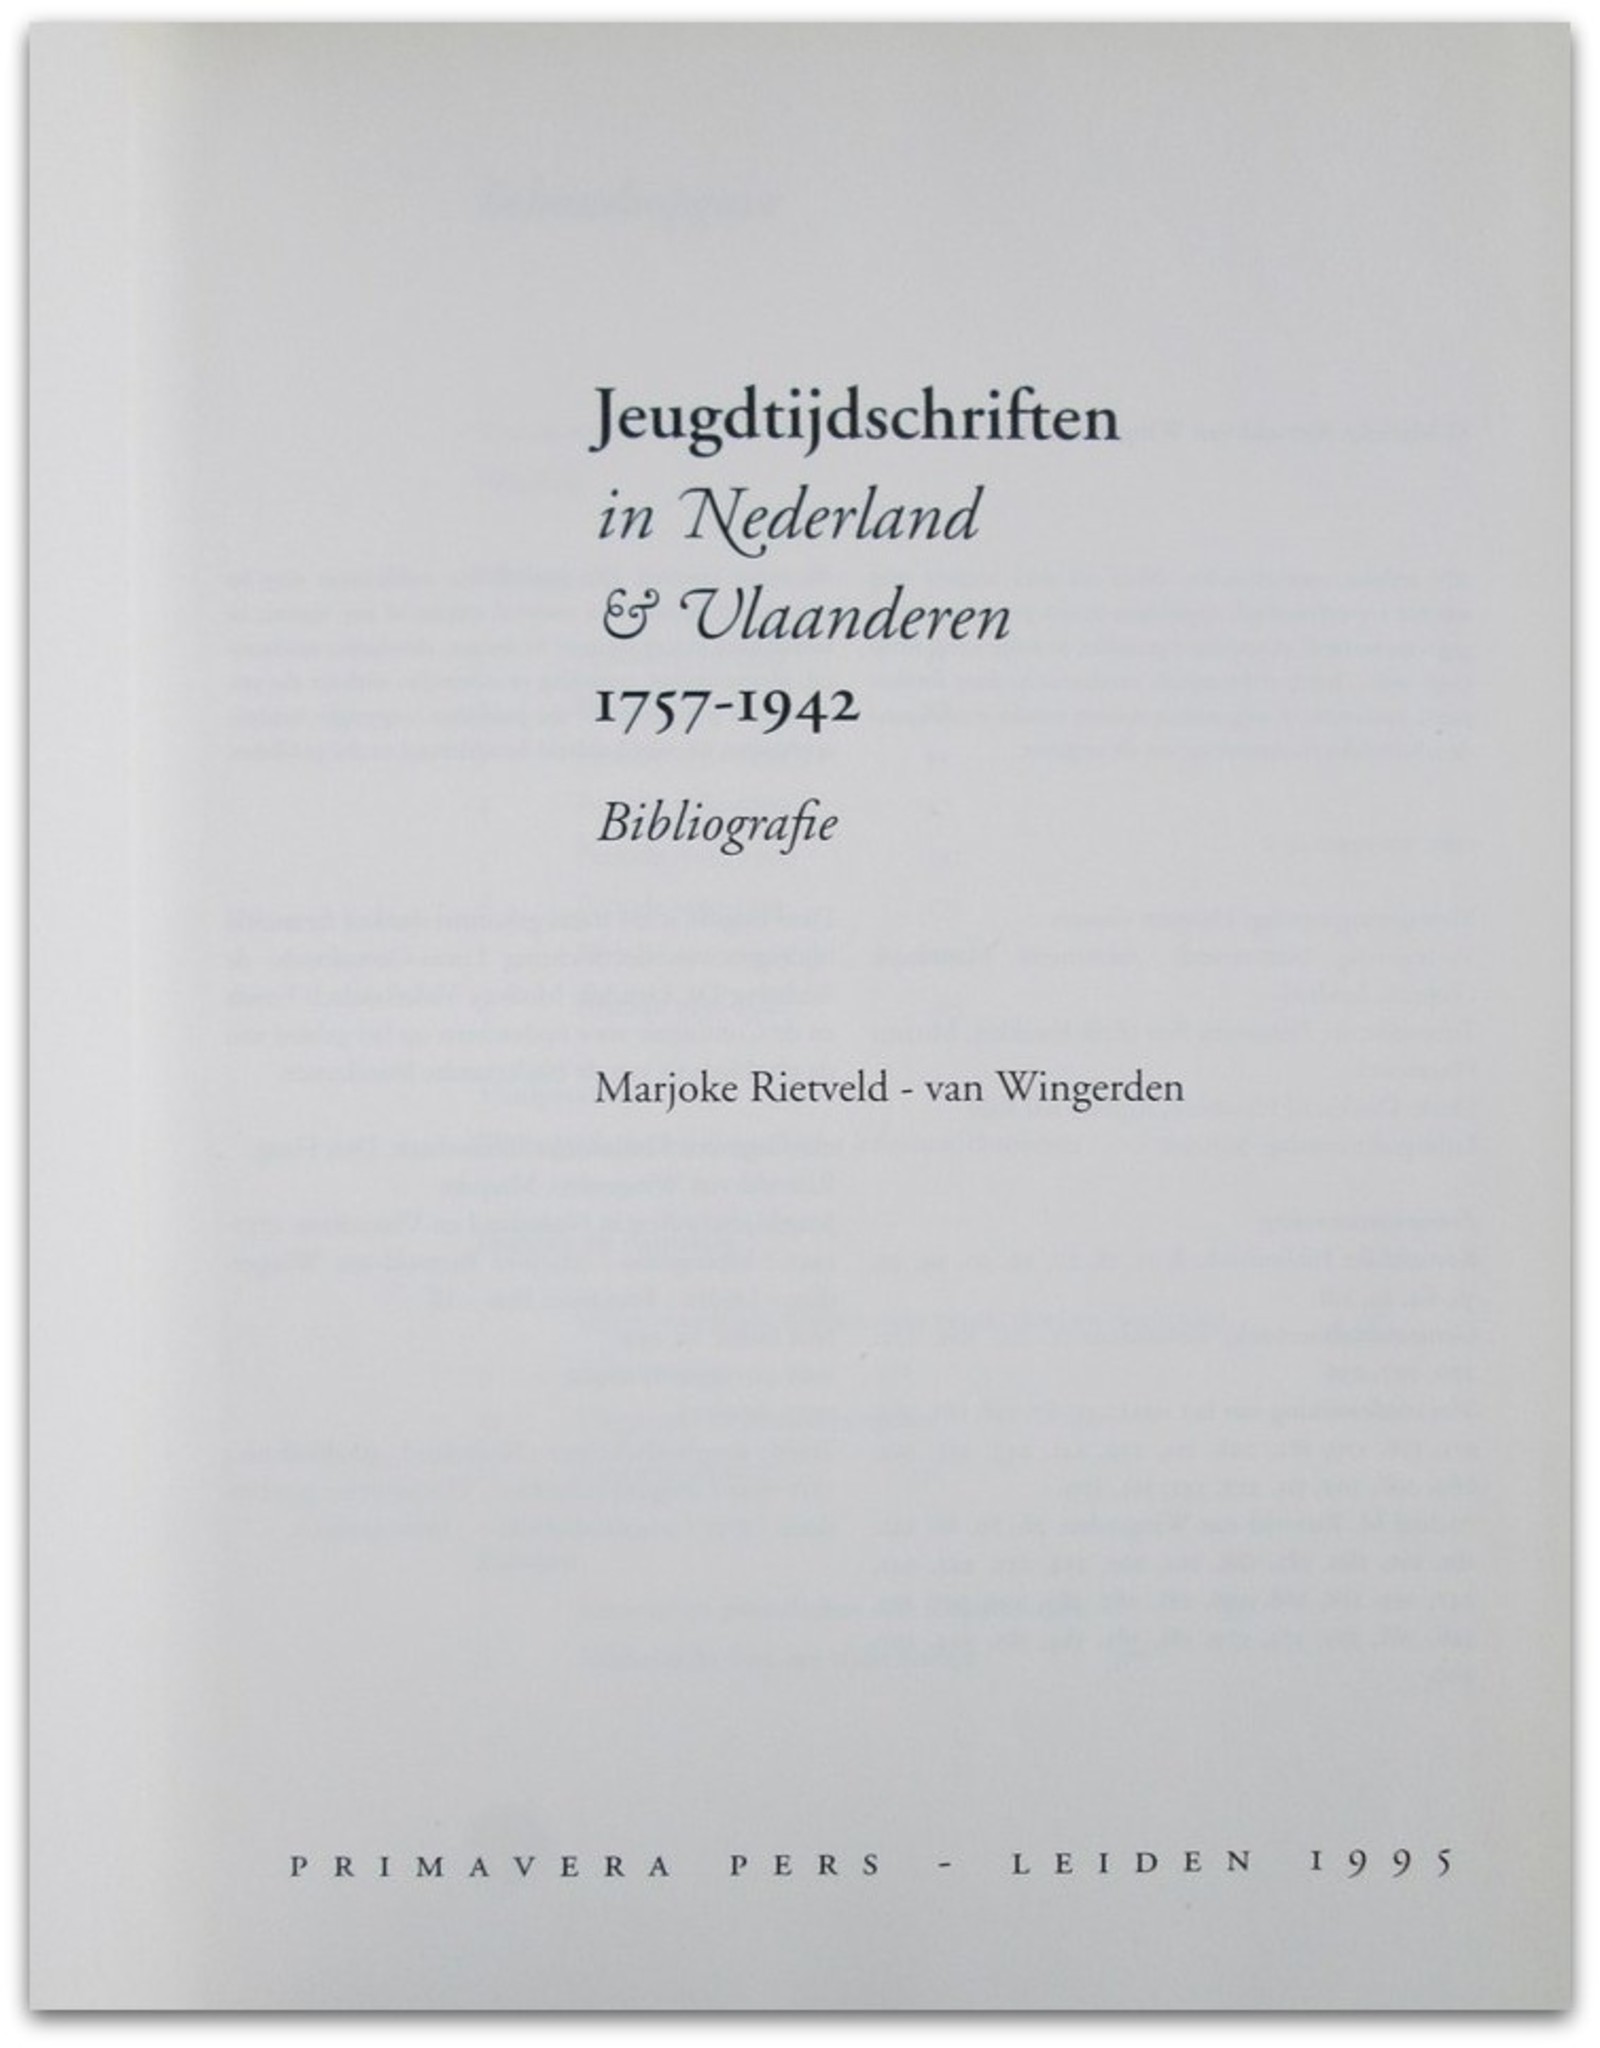 Marjoke Rietveld-van Wingerden - Jeugdtijdschriften in Nederland & Vlaanderen 1757-1942. Bibliografie